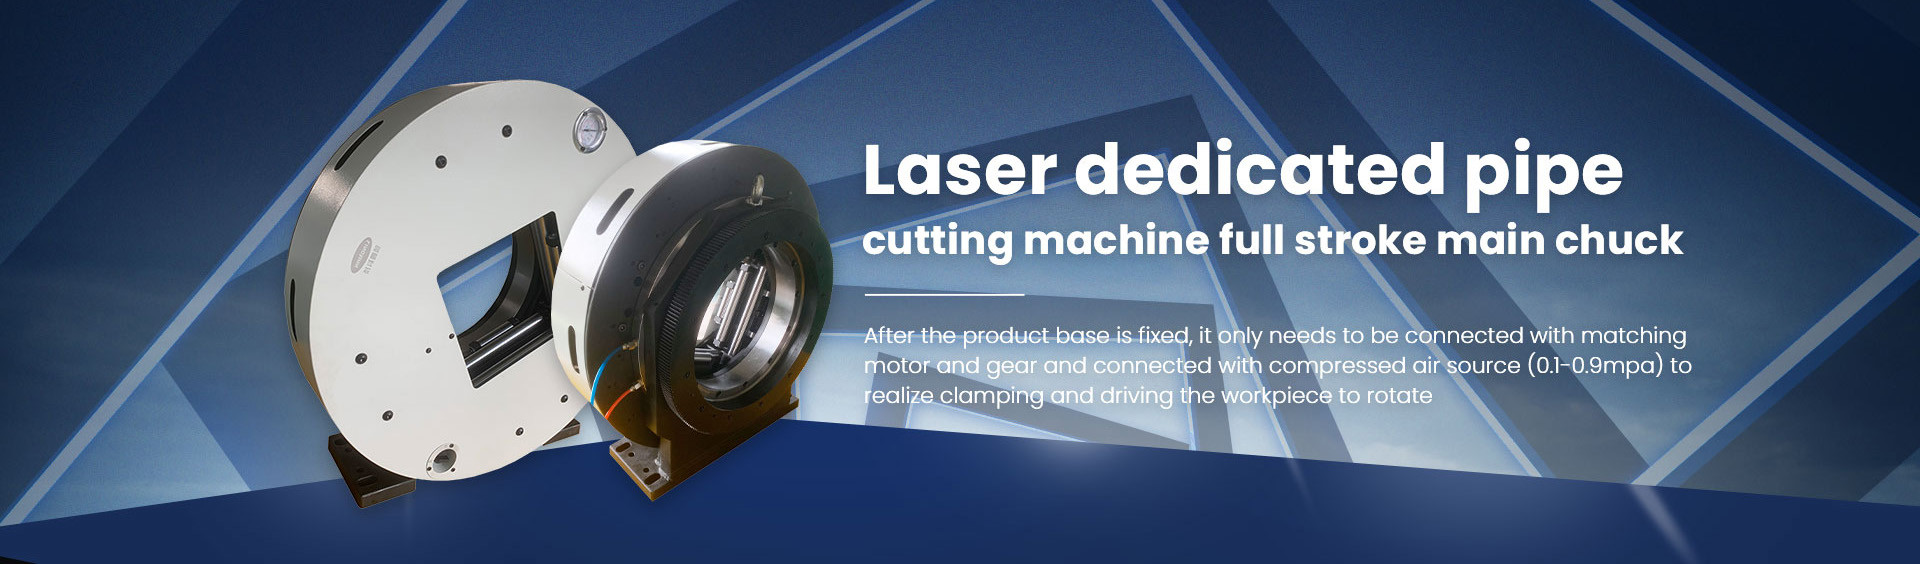 Jakość Uchwyt laserowy fabryka